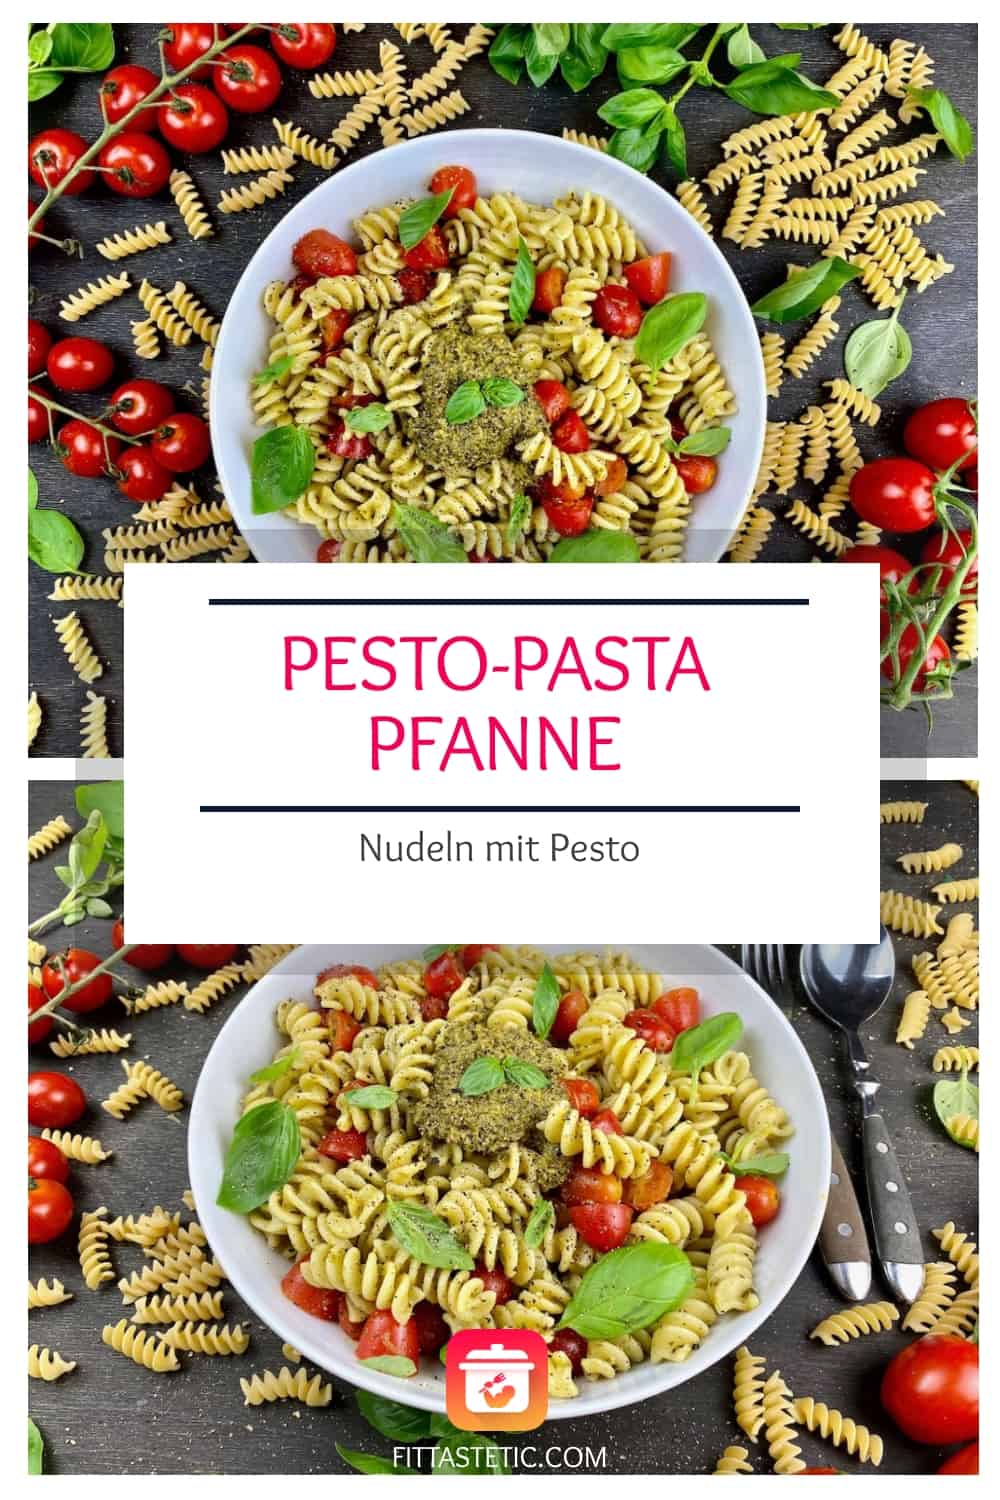 Pesto-Pasta-Pfanne - Schnelles Nudeln mit Pesto Rezept